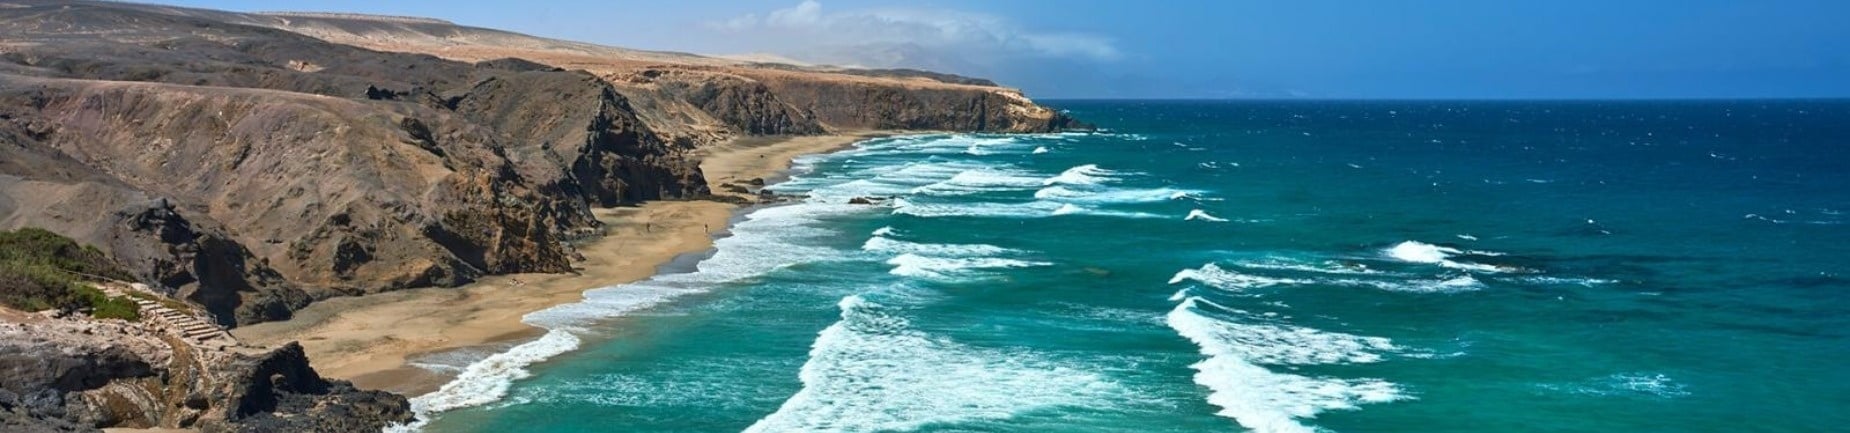 Bakour Fuerteventura La Pared**** | Web Oficial